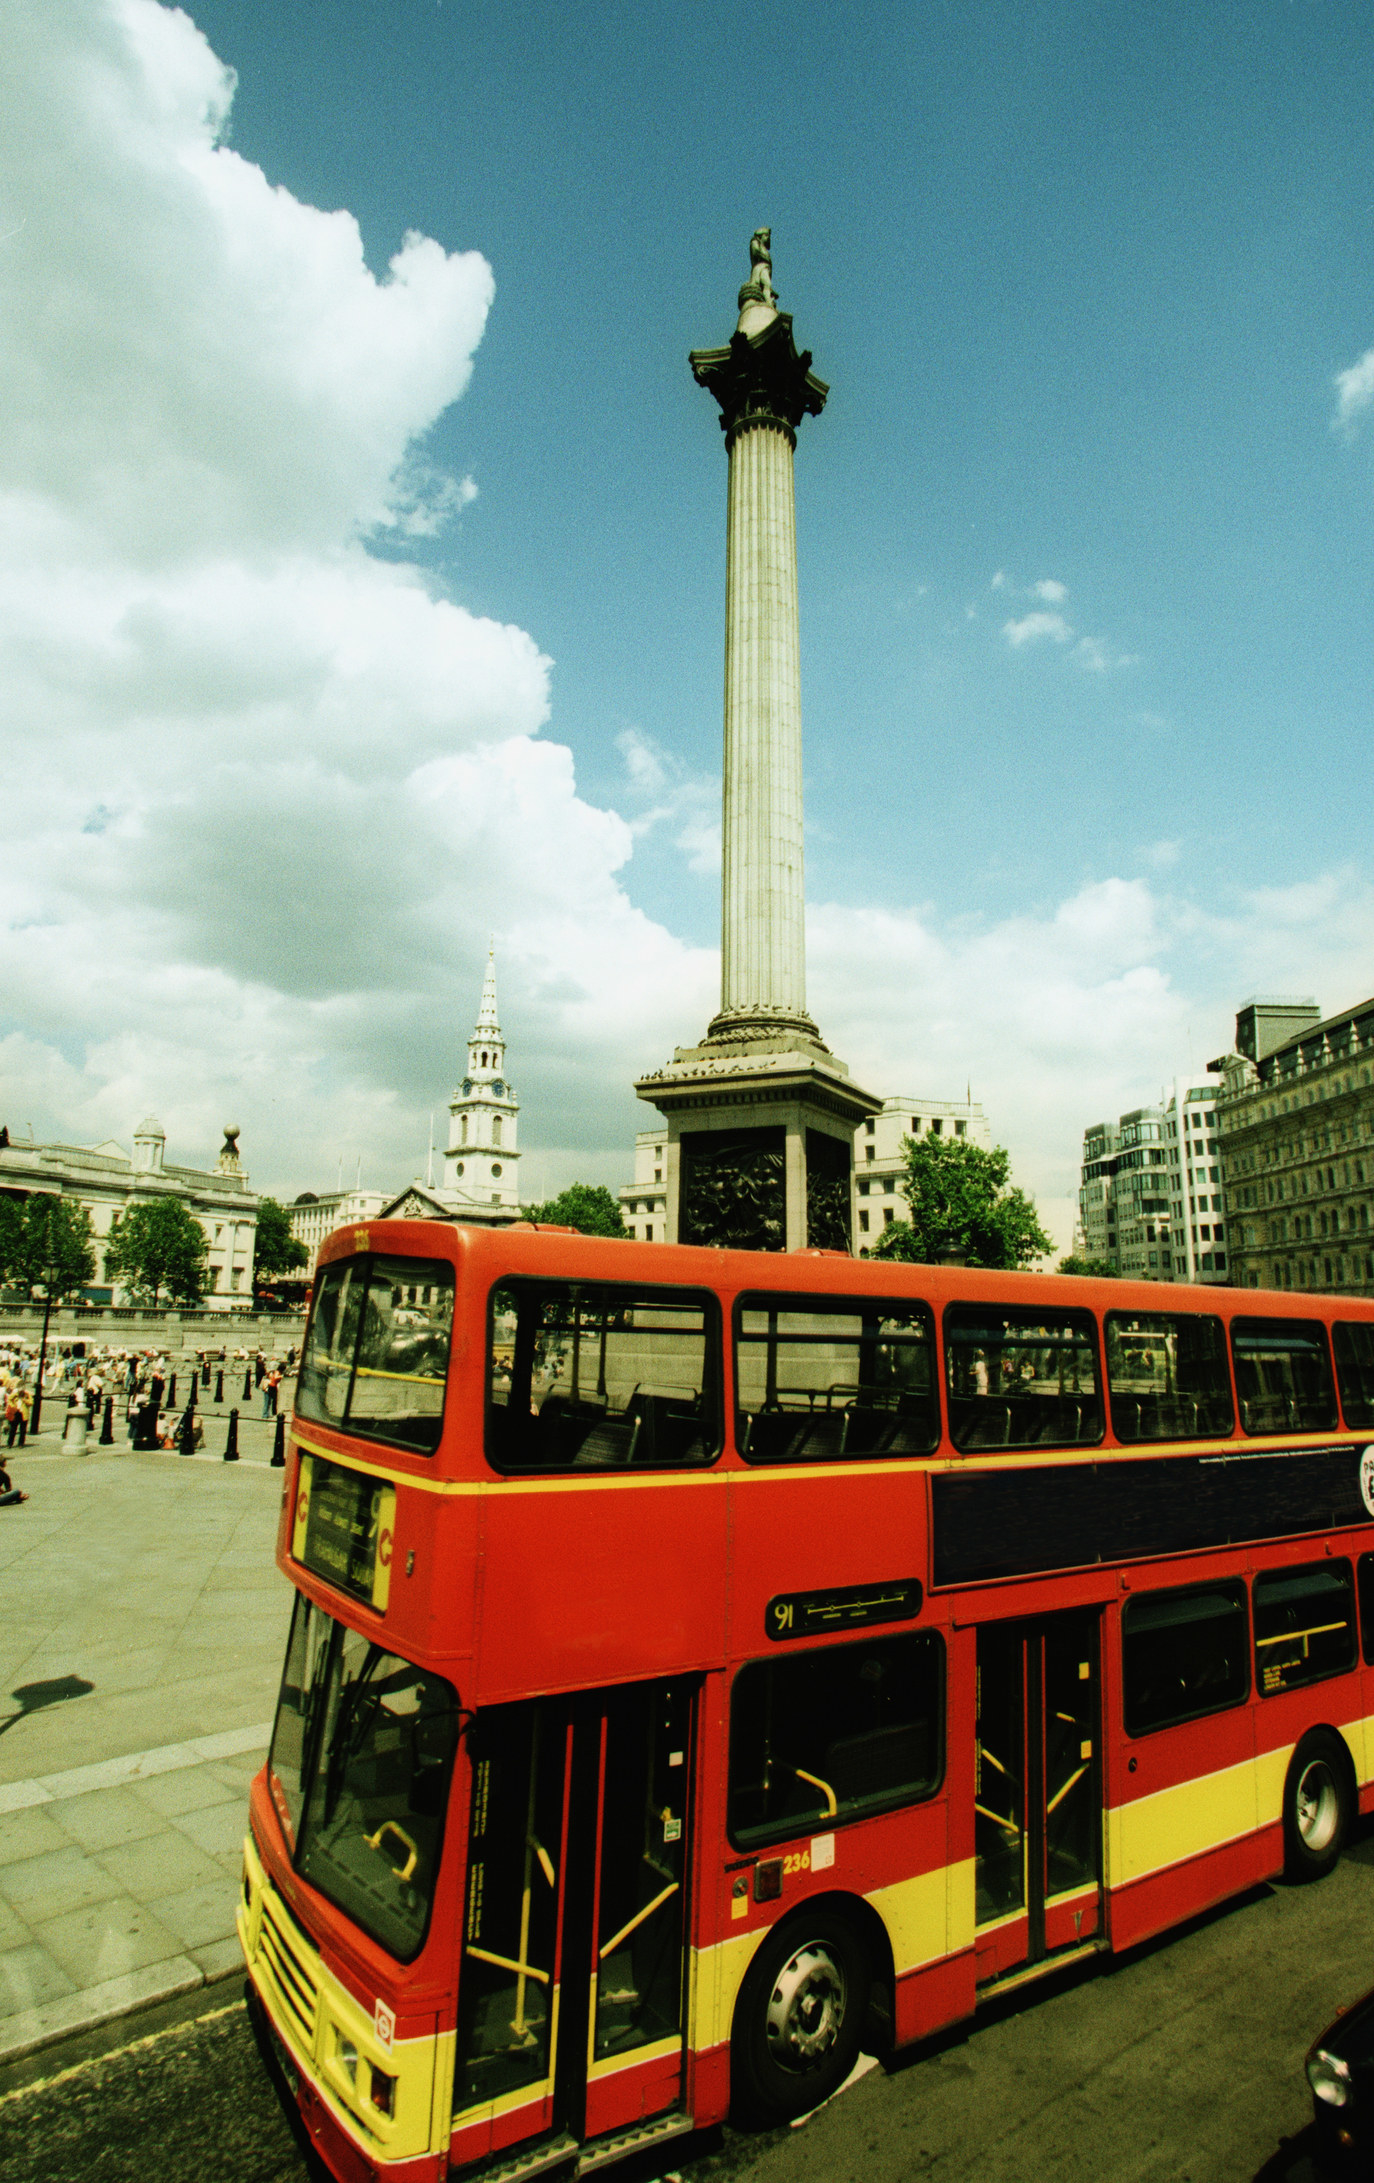 A double decker bus in London.